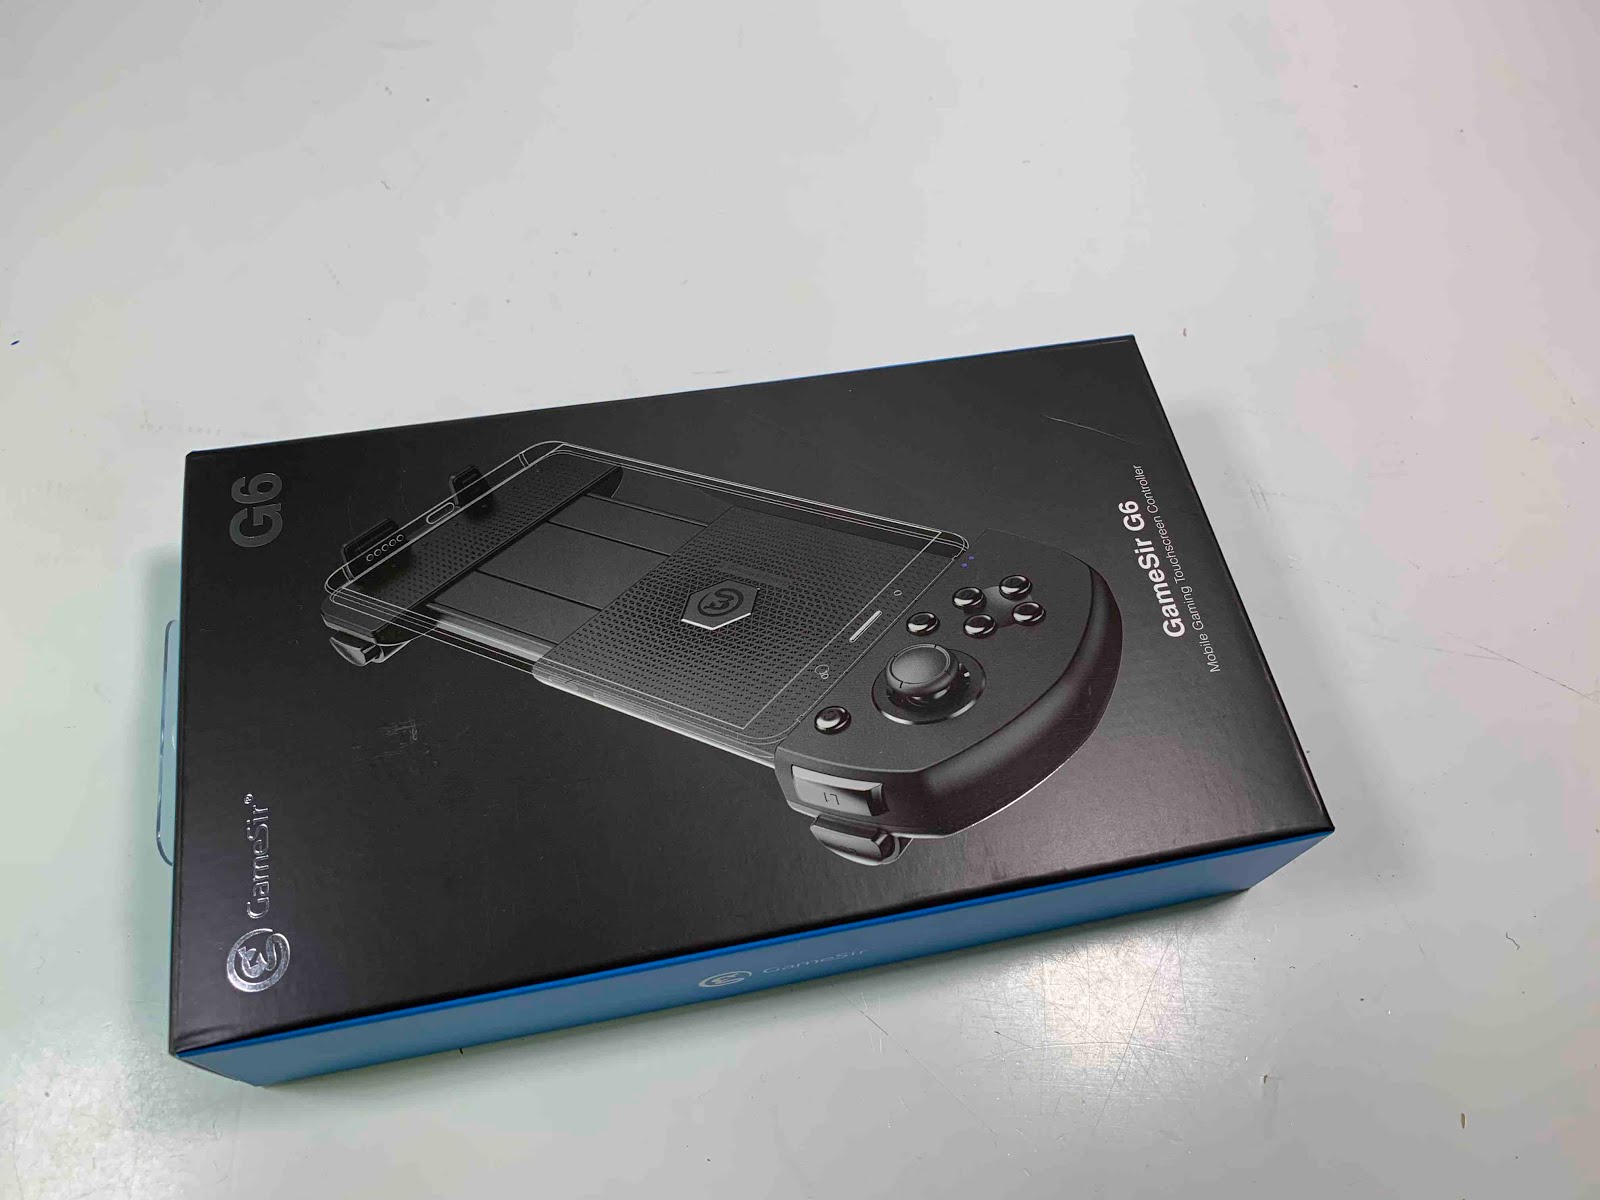 Gamesir G6 Iphone対応bluetooth接続ゲームパッド Pubg Mobile対応 密林レビューでは言えない